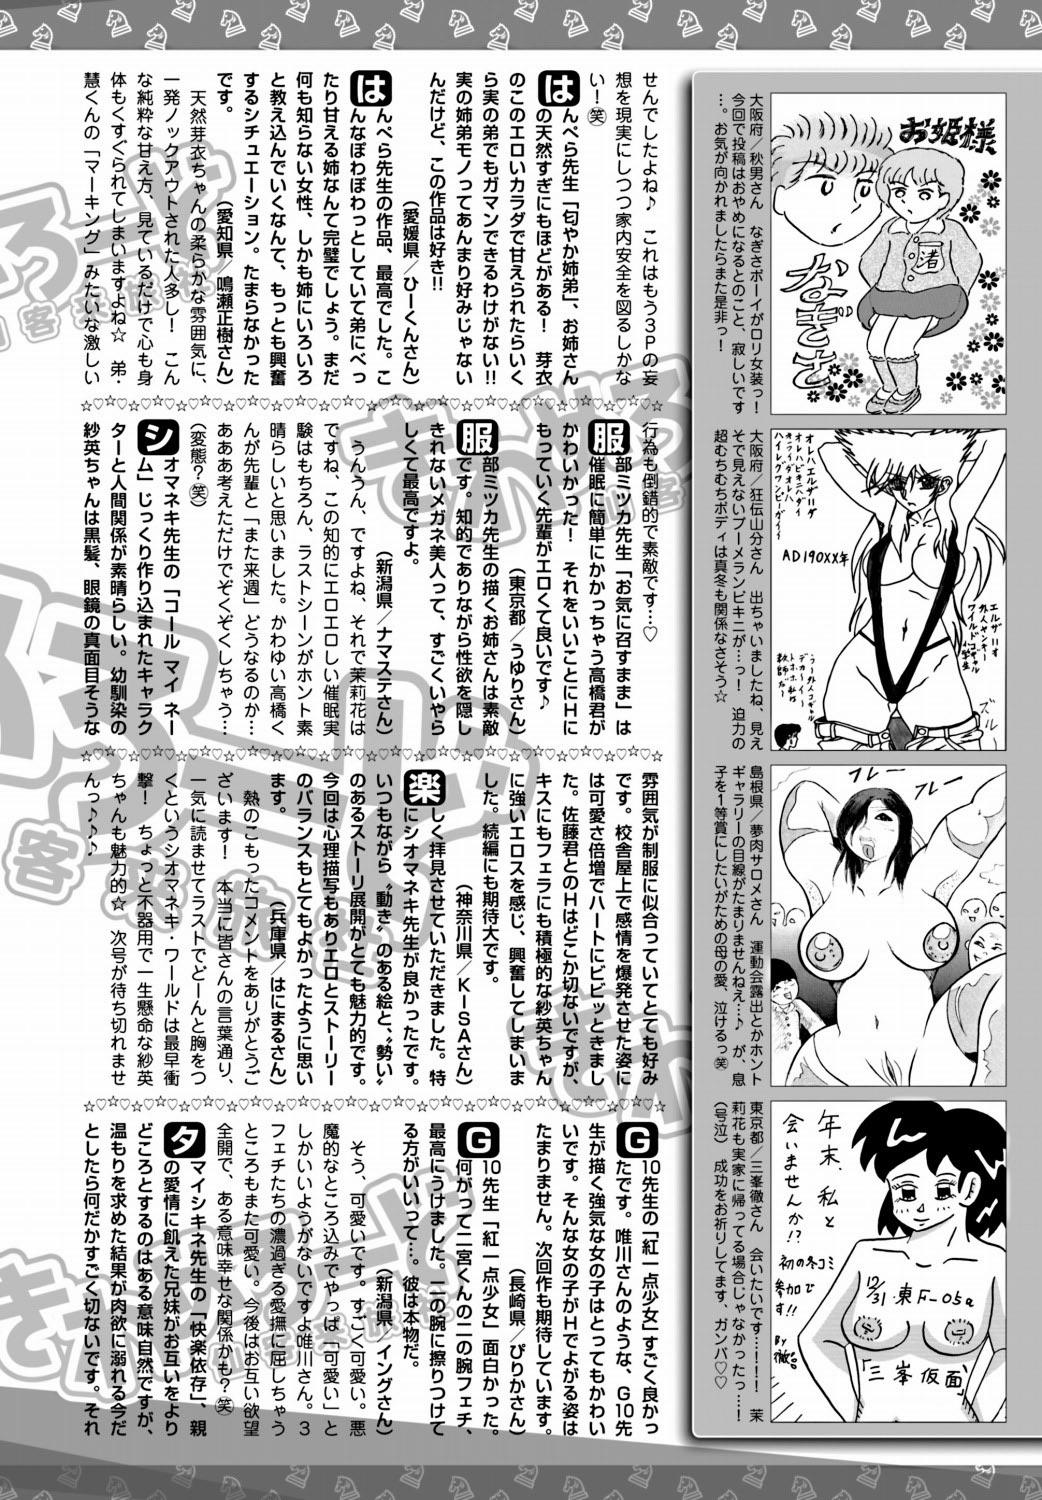 Bishoujo Kakumei KIWAME 2012-02 Vol.18 206